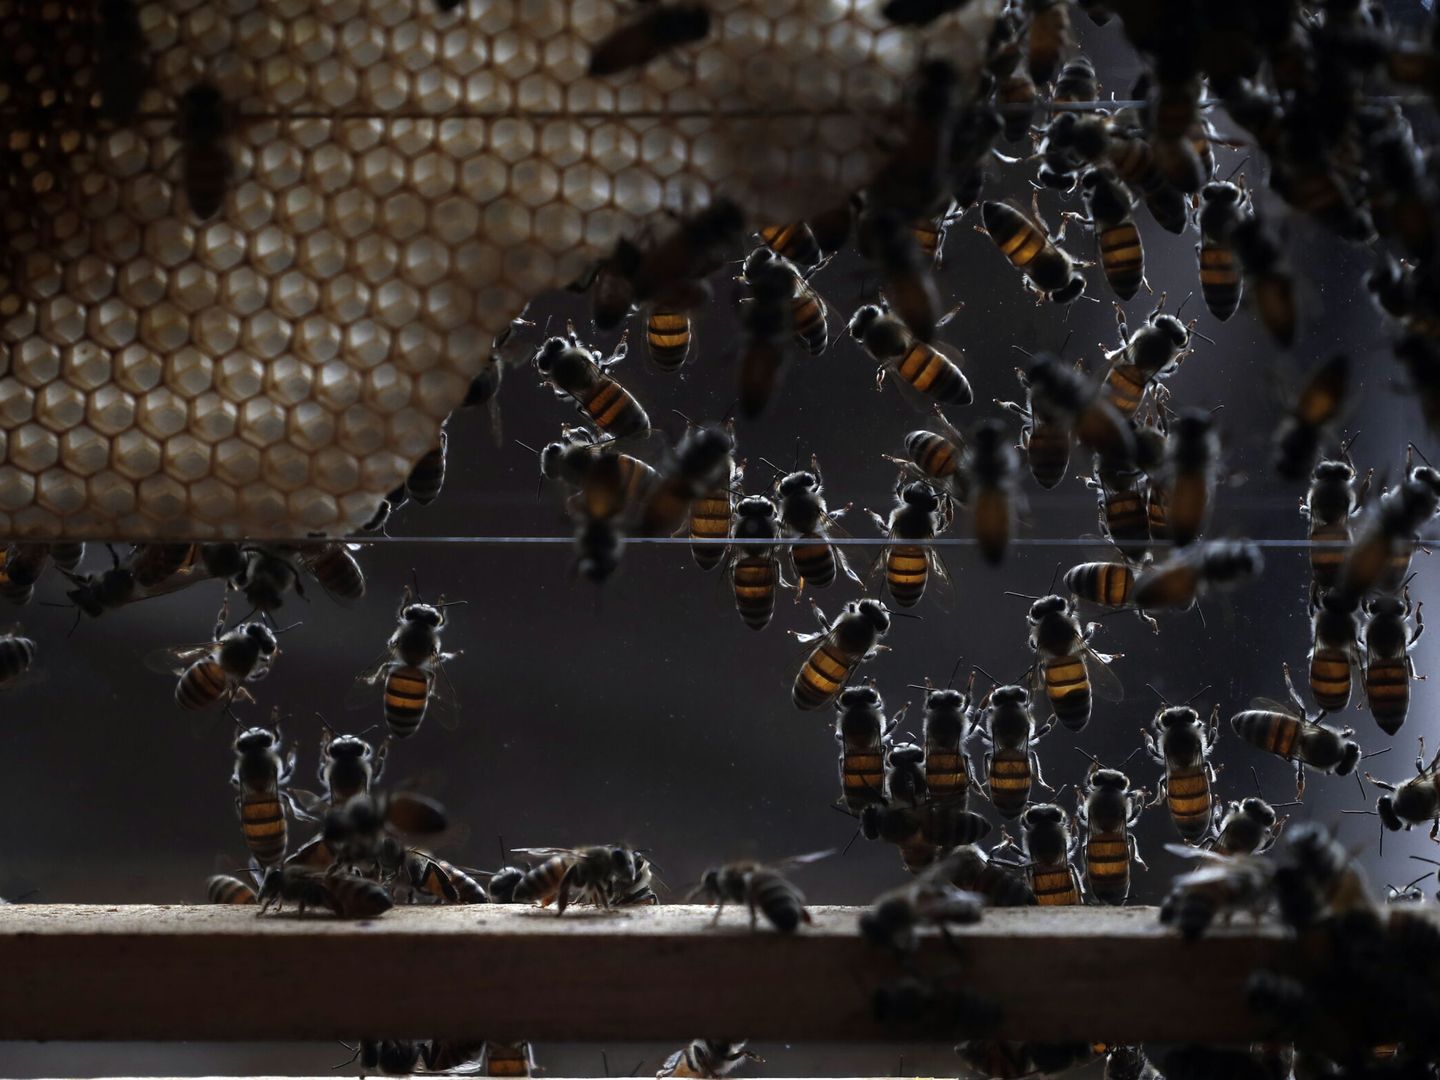 Las abejas faenan en un panal de una colmena instalada en una urna de cristal, durante una feria de la miel. (EFE/Yahya Arhab)